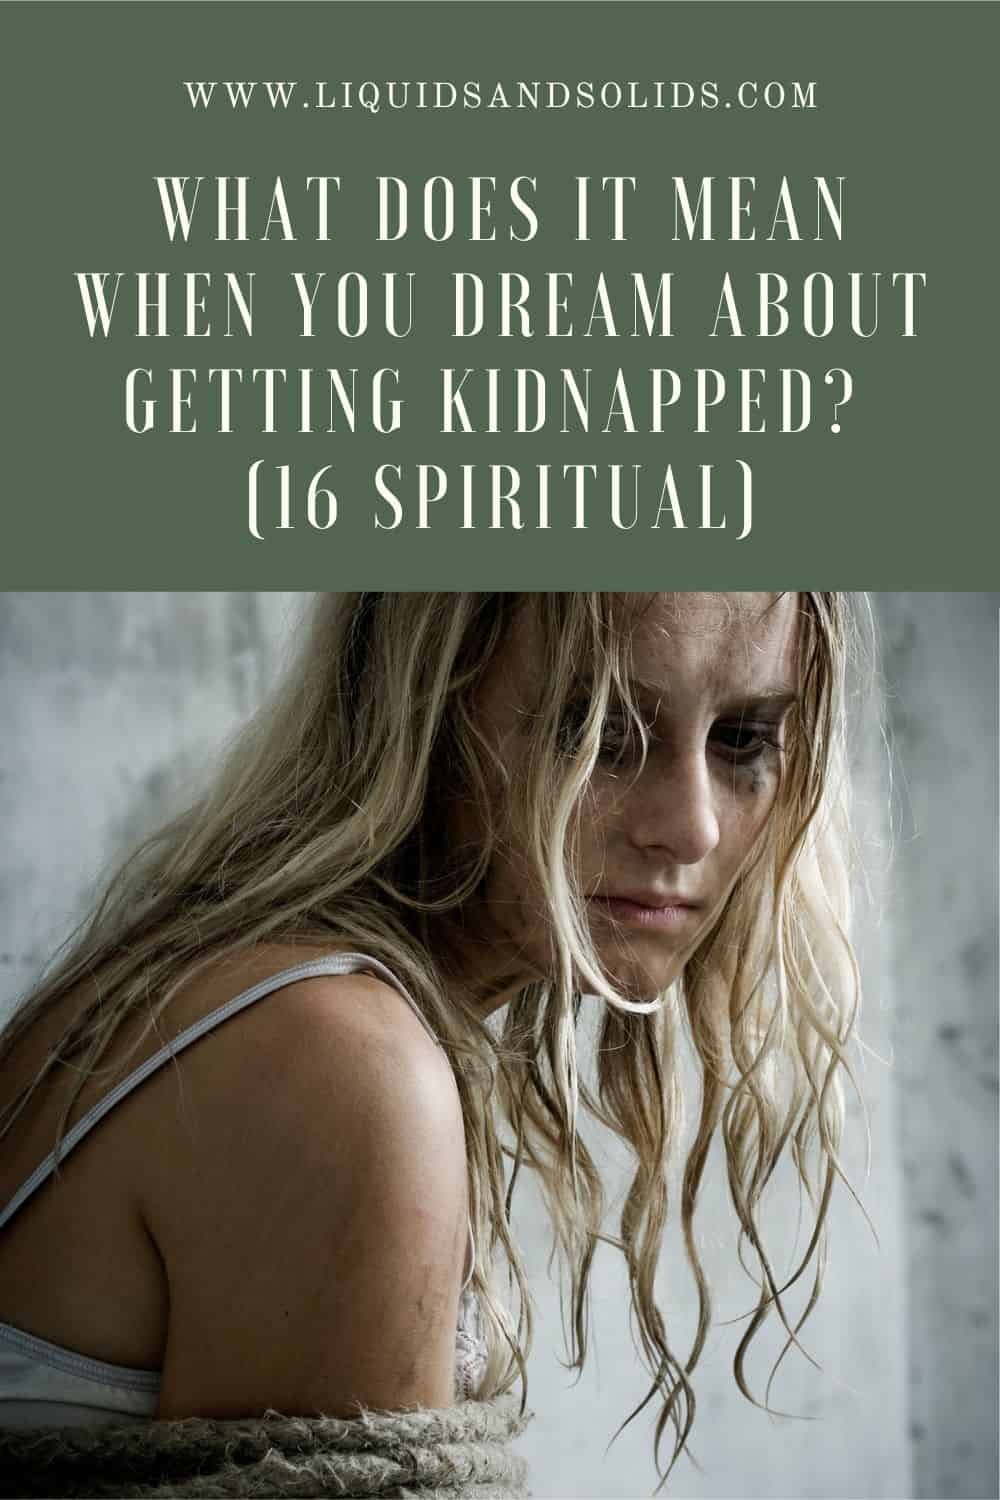  Hvad betyder det, når du drømmer om at blive kidnappet? (16 spirituelle betydninger)